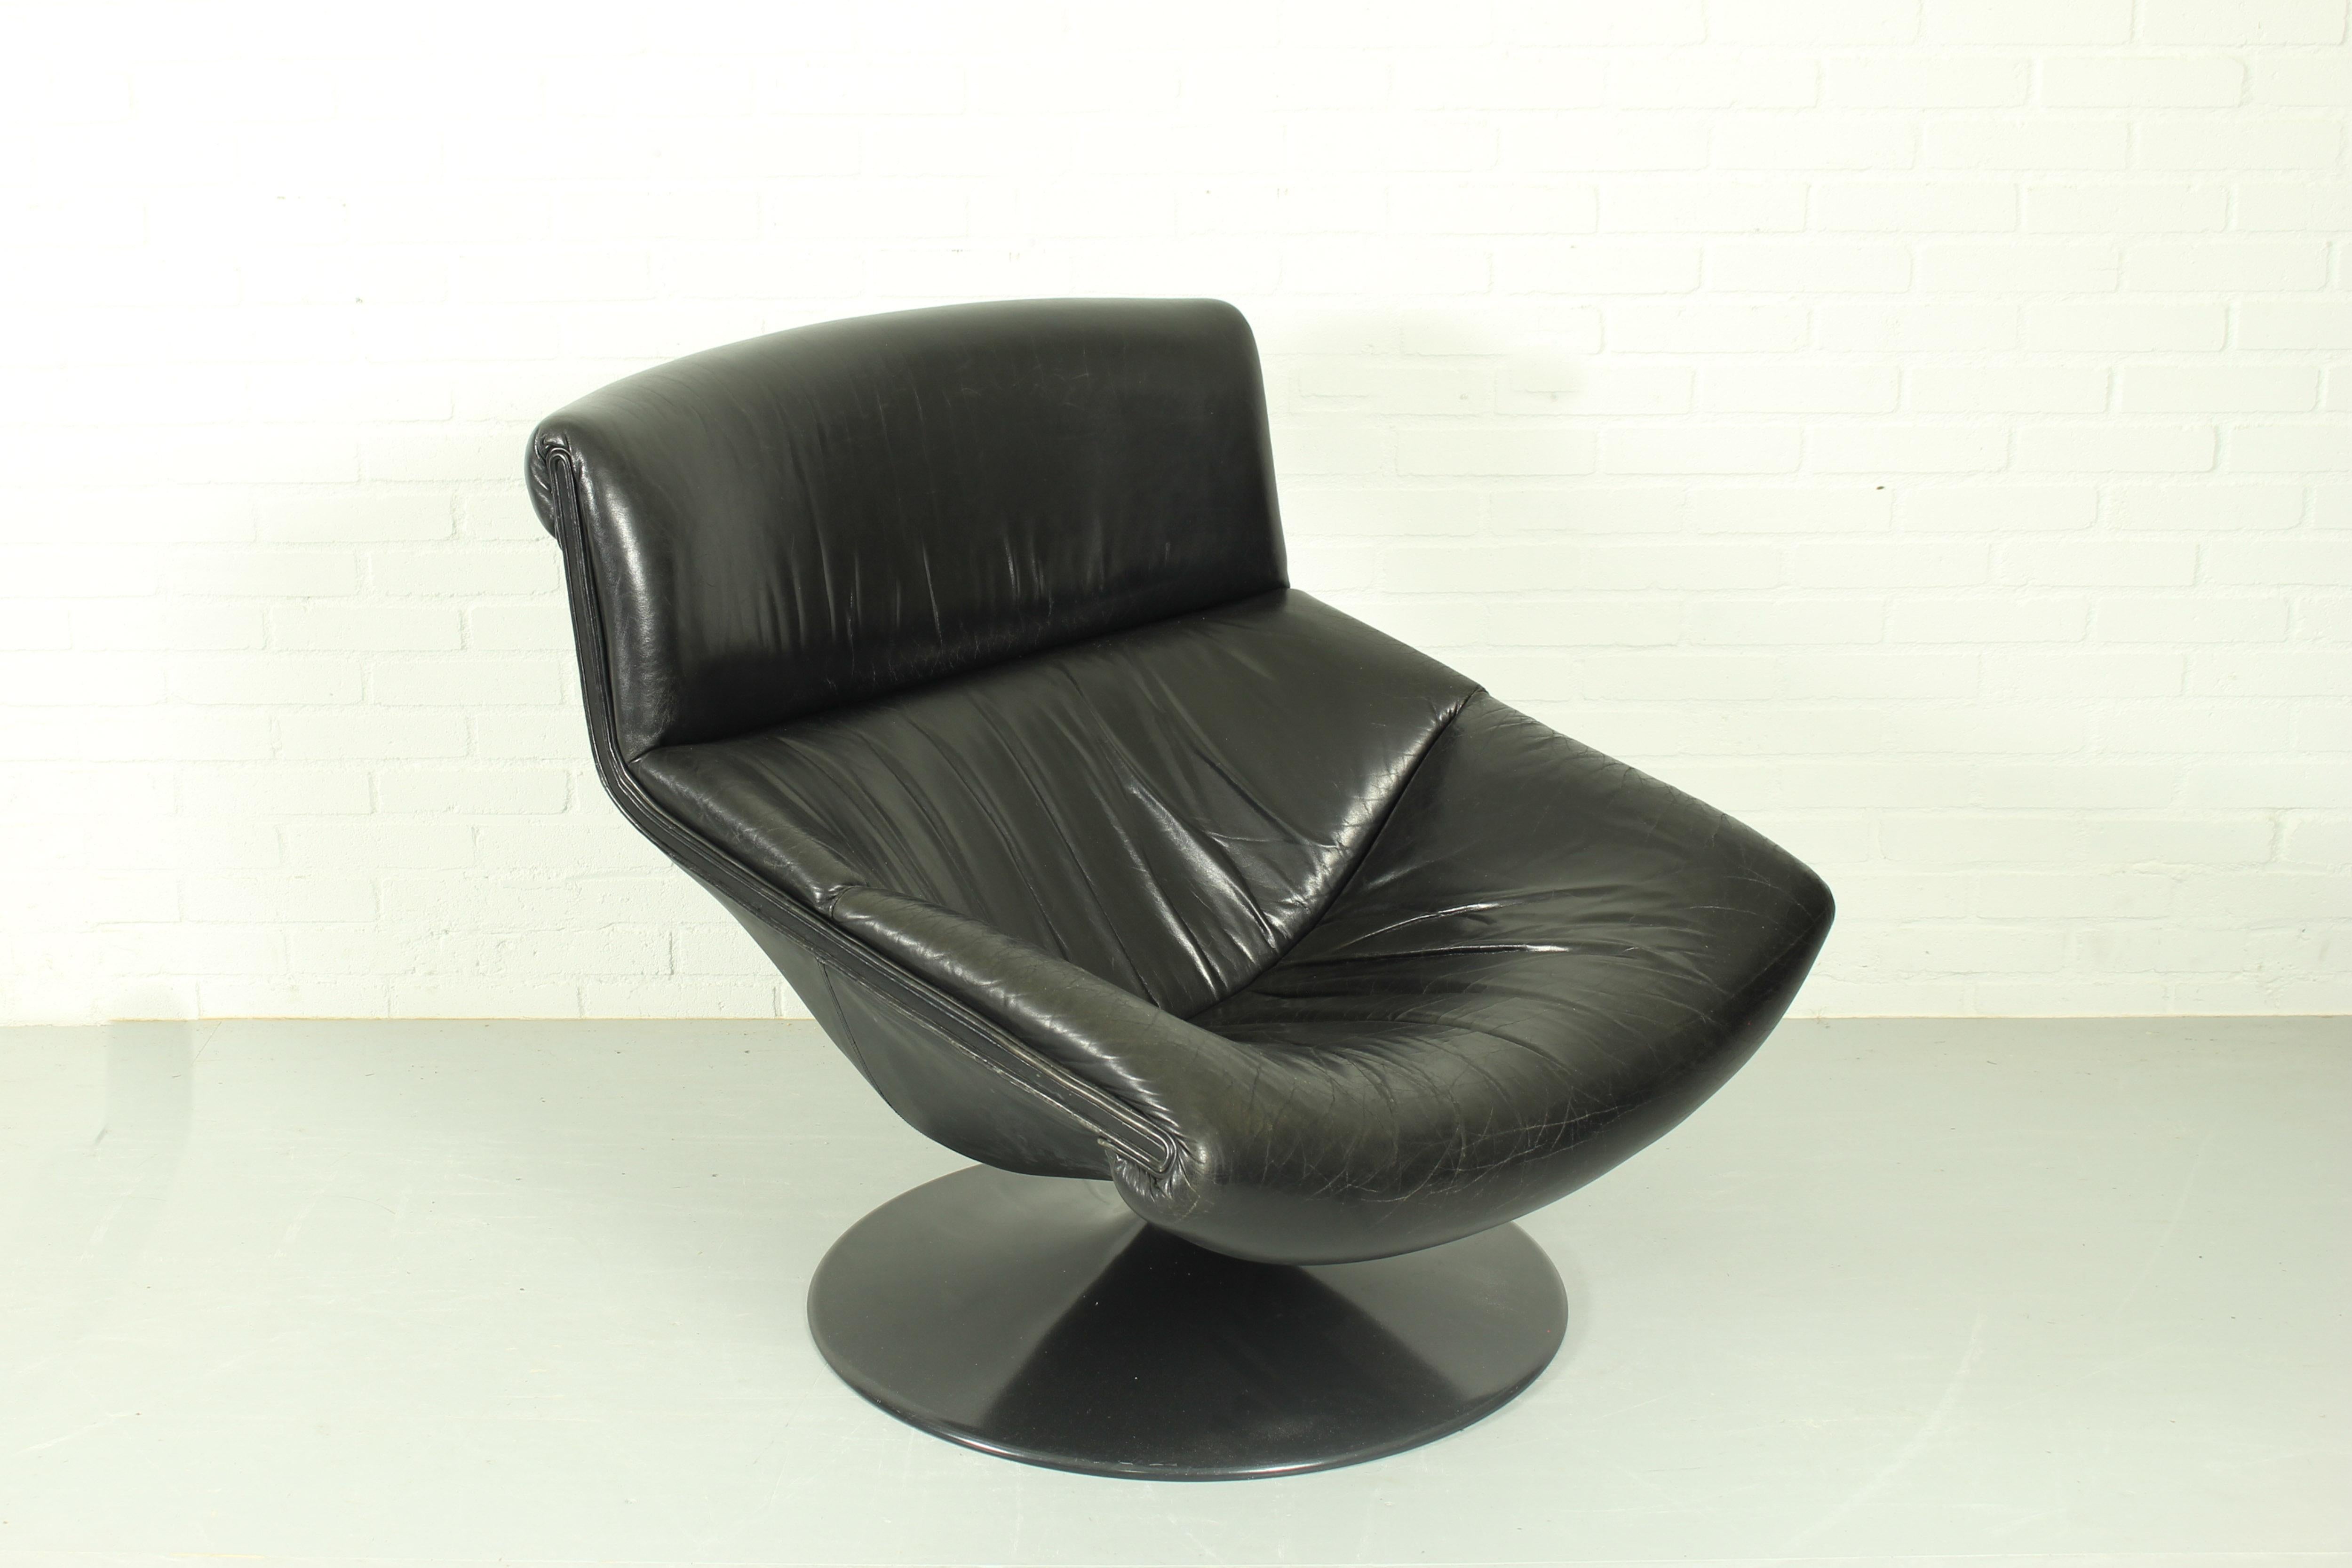 Lounge-Drehstuhl von Geoffrey Harcourt für Artifort, 1970er Jahre. Modell F520. Dieser Stuhl hat ein rundes Metallgestell und ist mit schwarzem Originalleder bezogen. In einem guten Vintage-Zustand mit starker Patina auf dem Leder. 

Abmessungen: